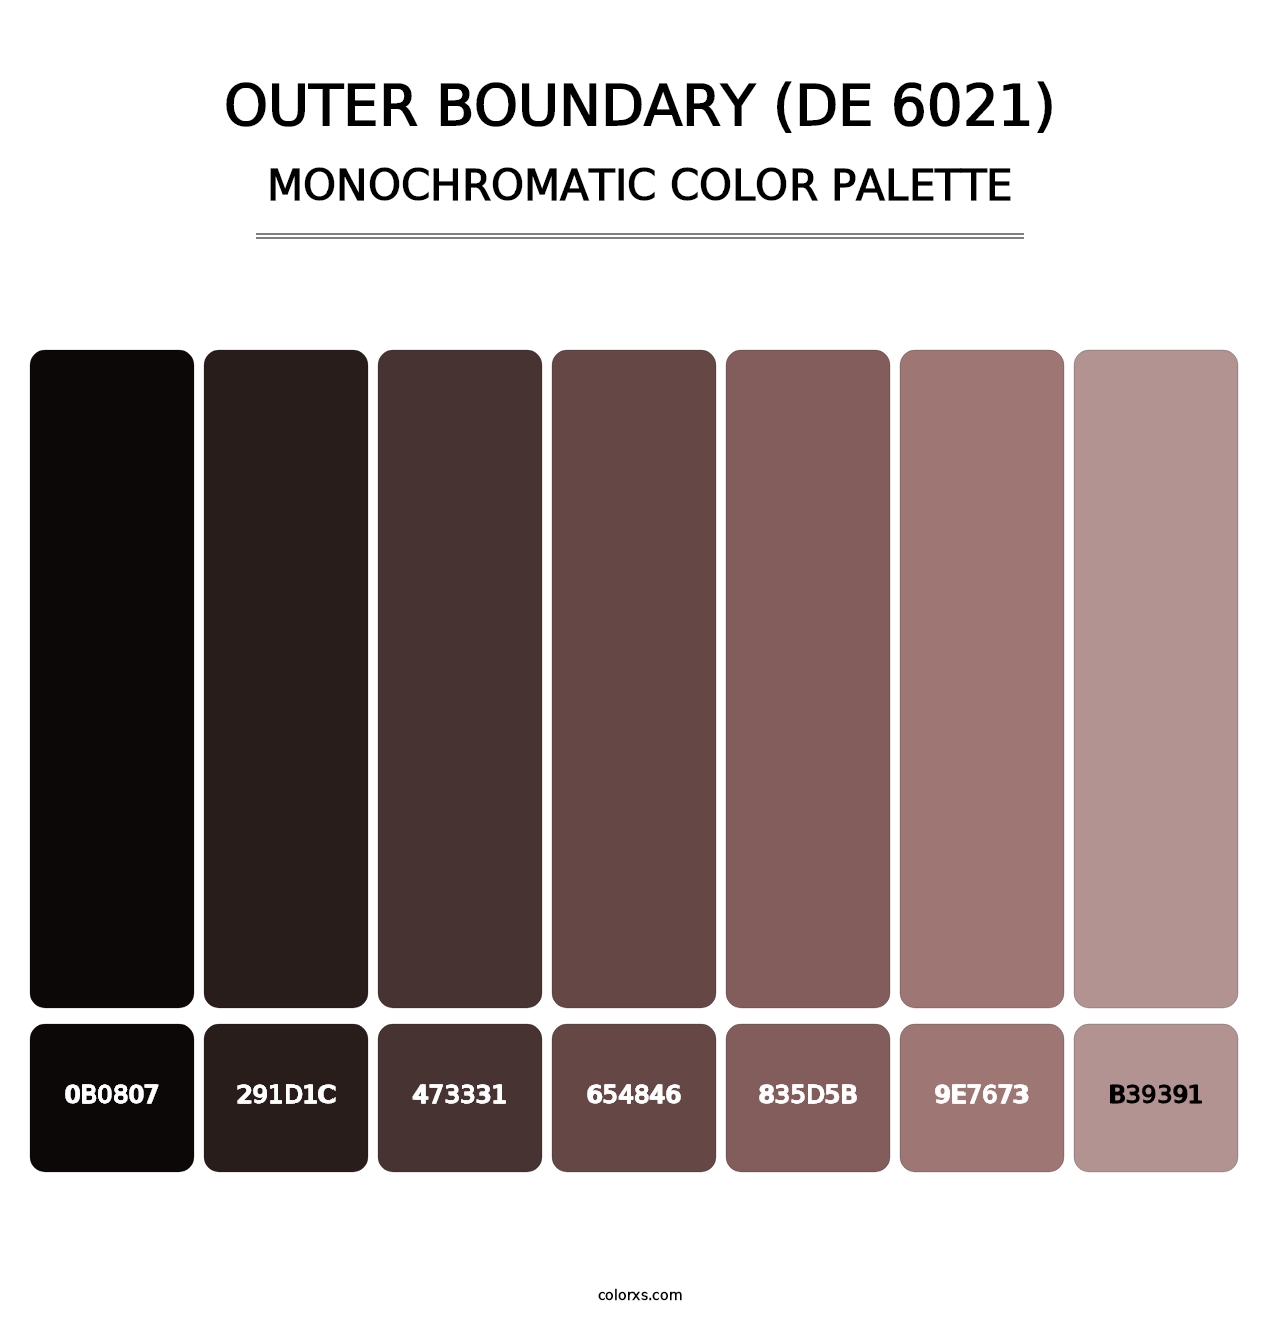 Outer Boundary (DE 6021) - Monochromatic Color Palette